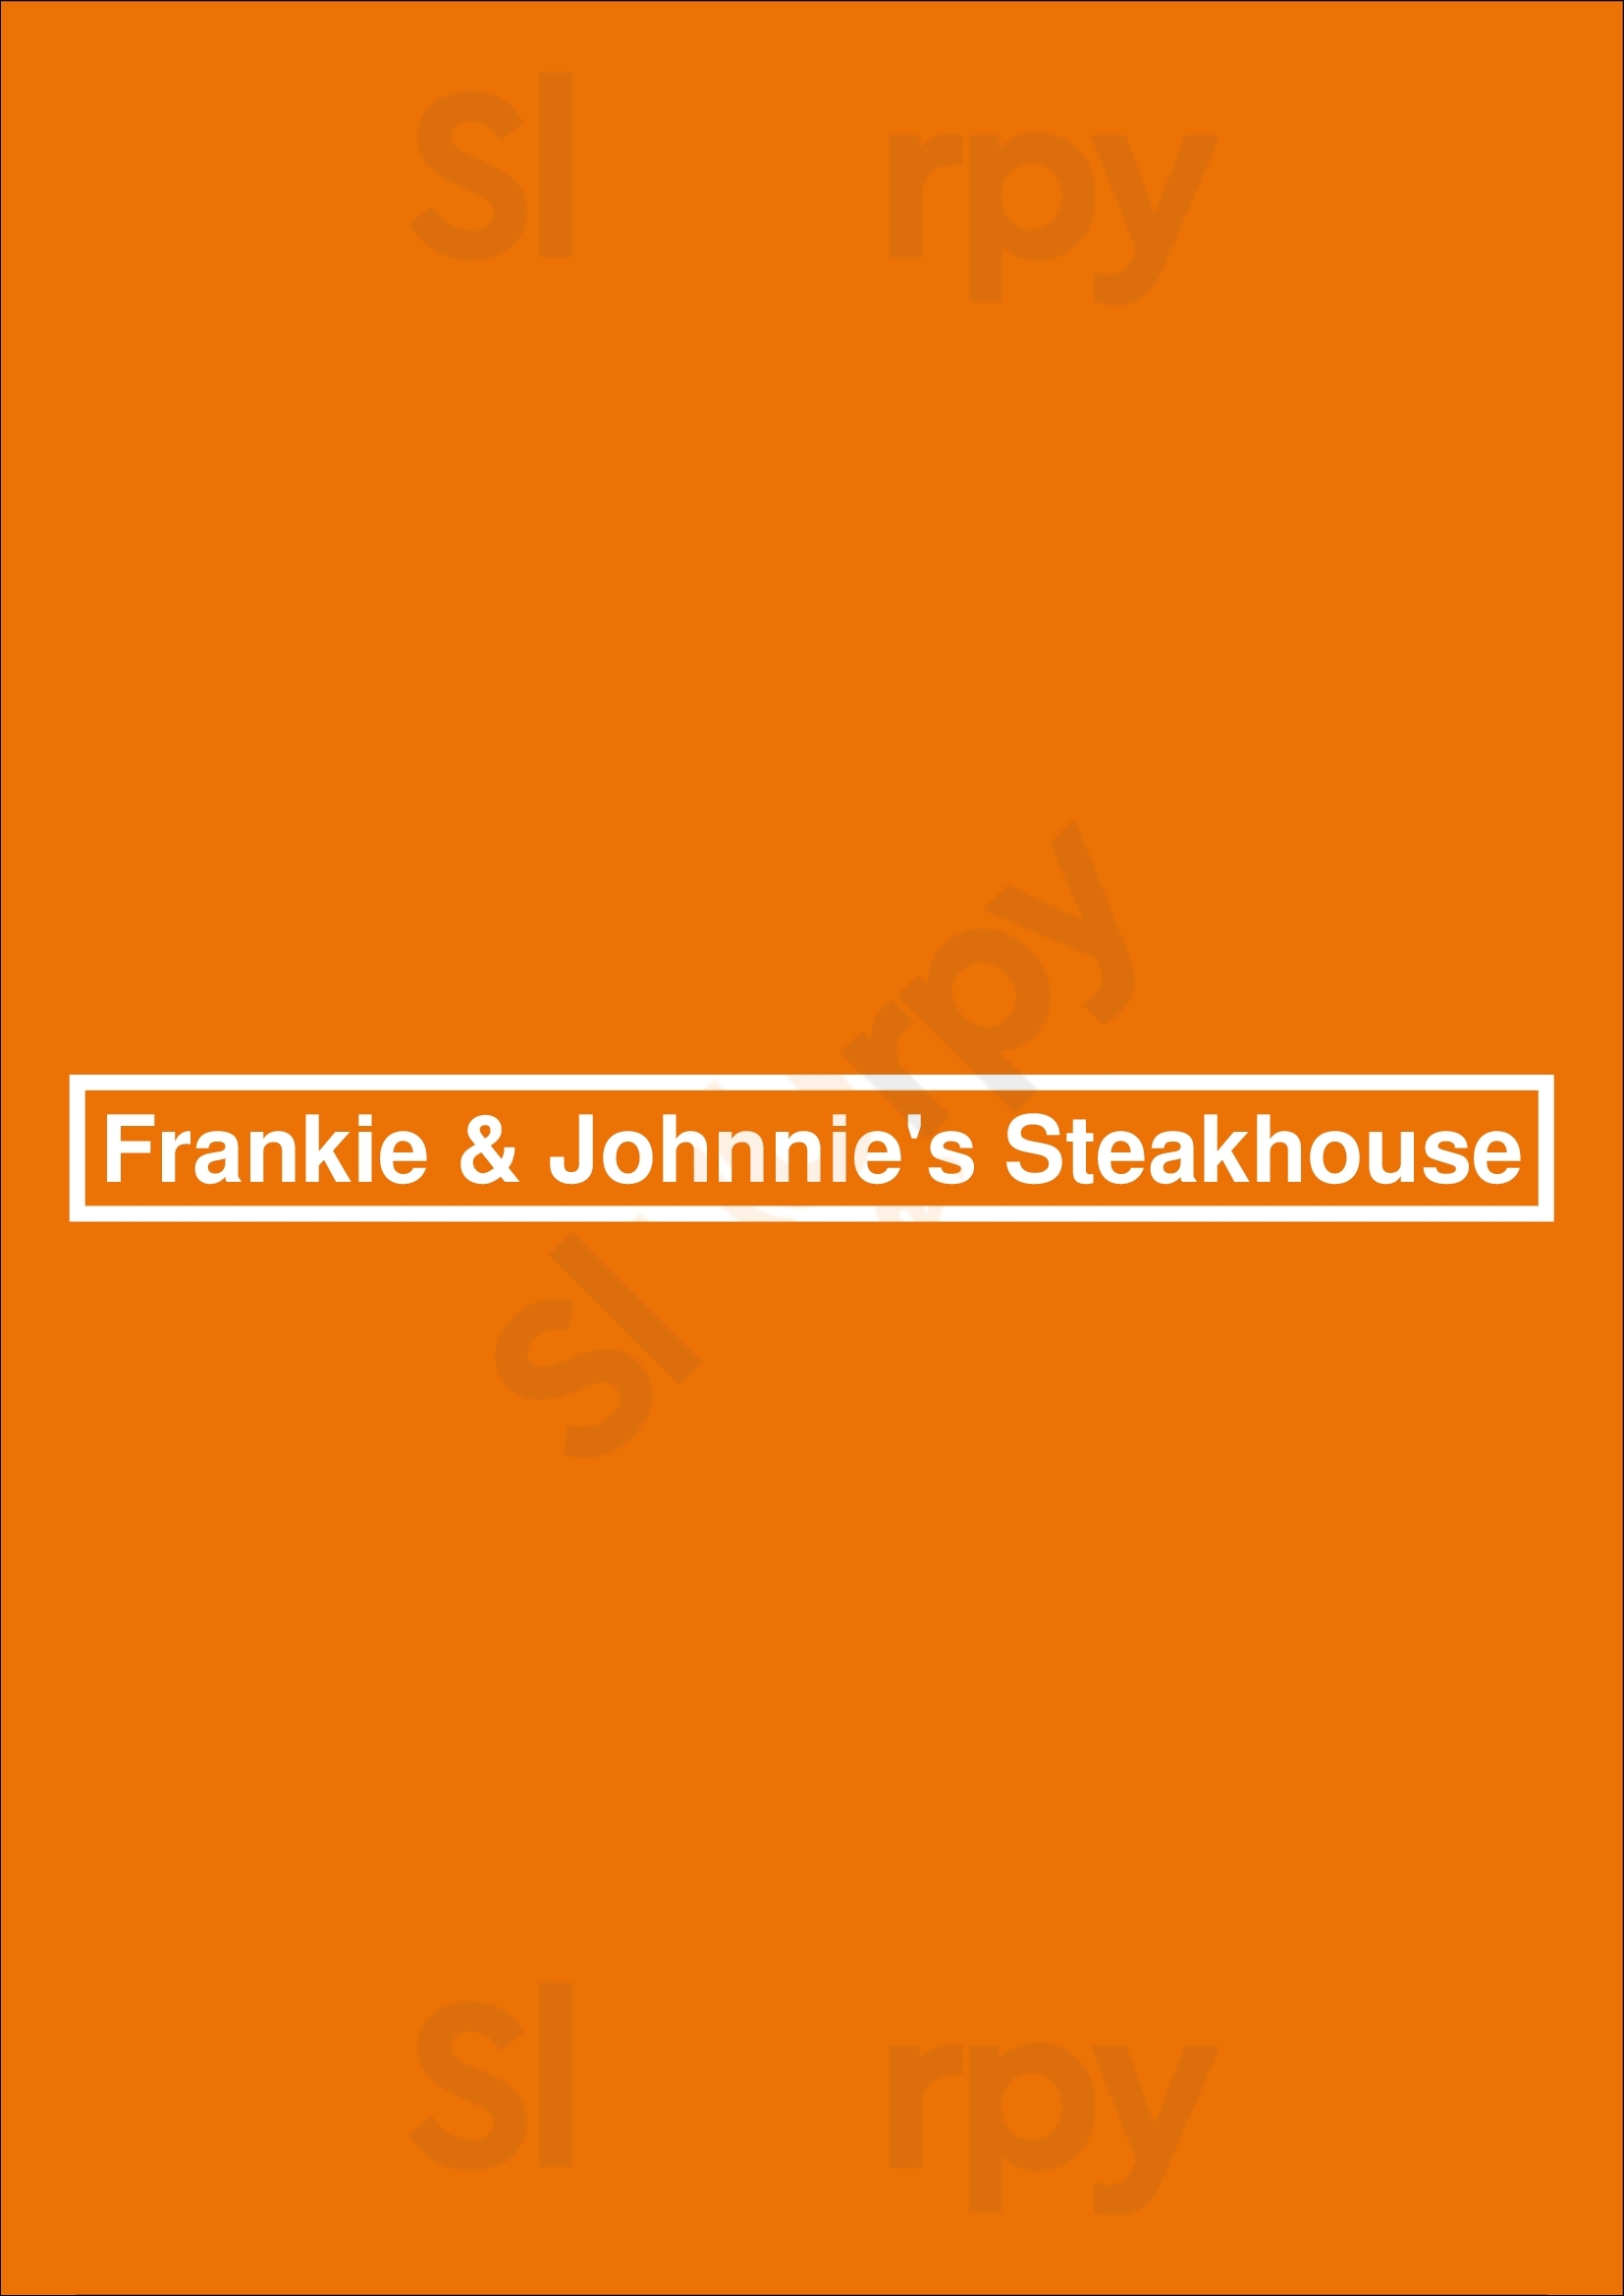 Frankie & Johnnie's Steakhouse New York City Menu - 1